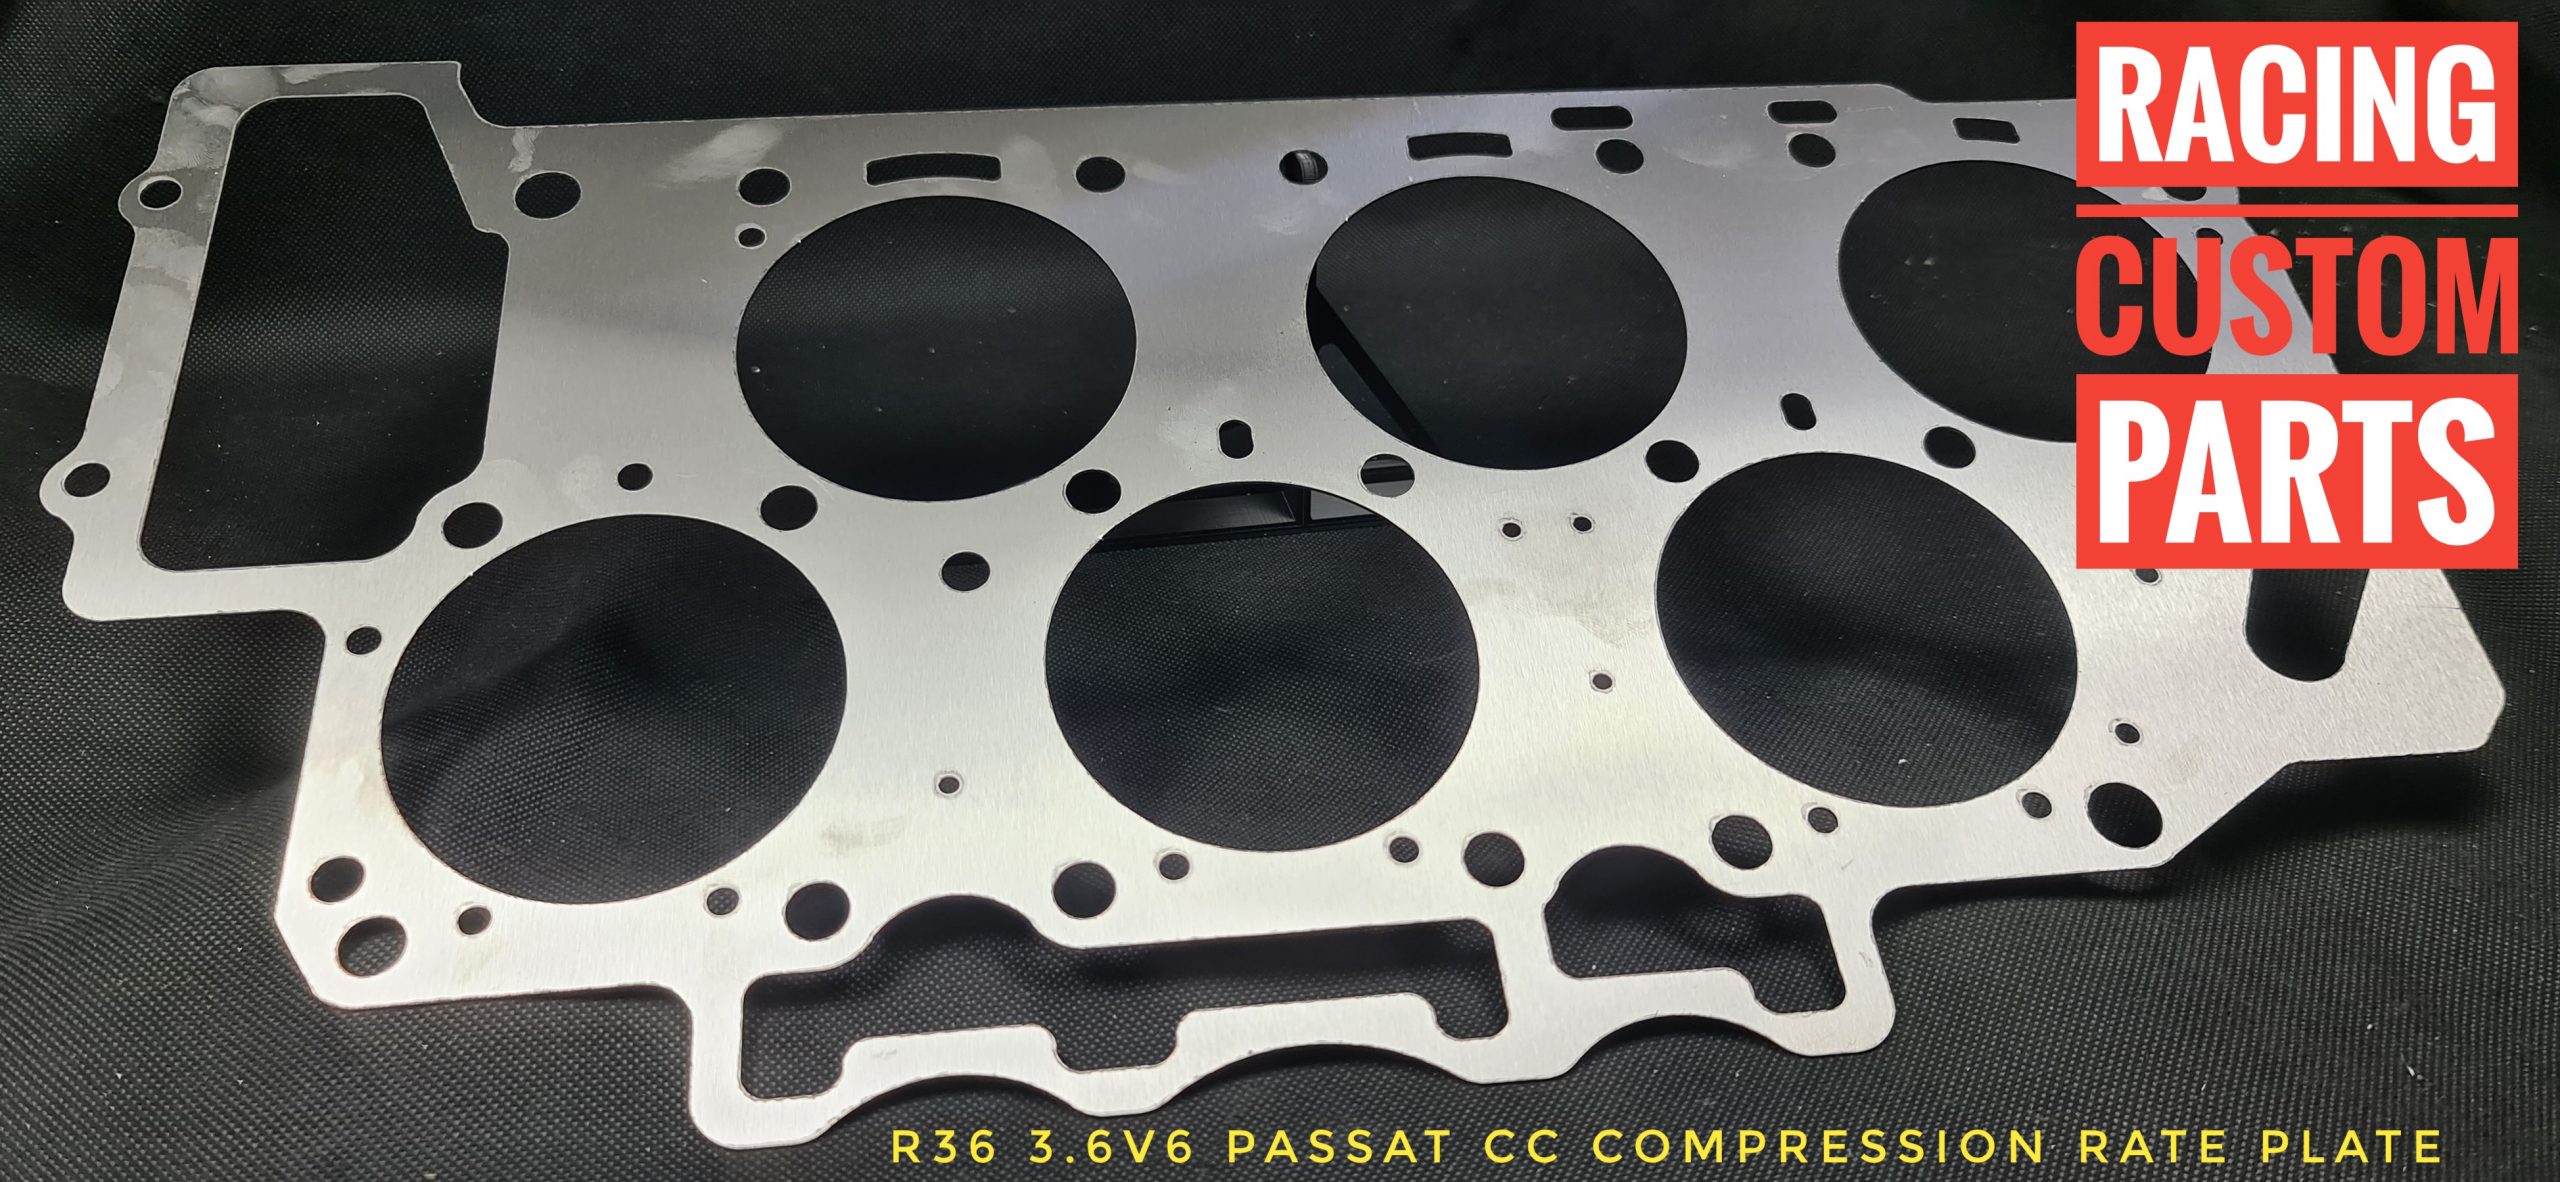 r36 3,6 v6 passat cc compression rate plate cr plate c/r plate billet cnc racing custom parts passat cc turbo